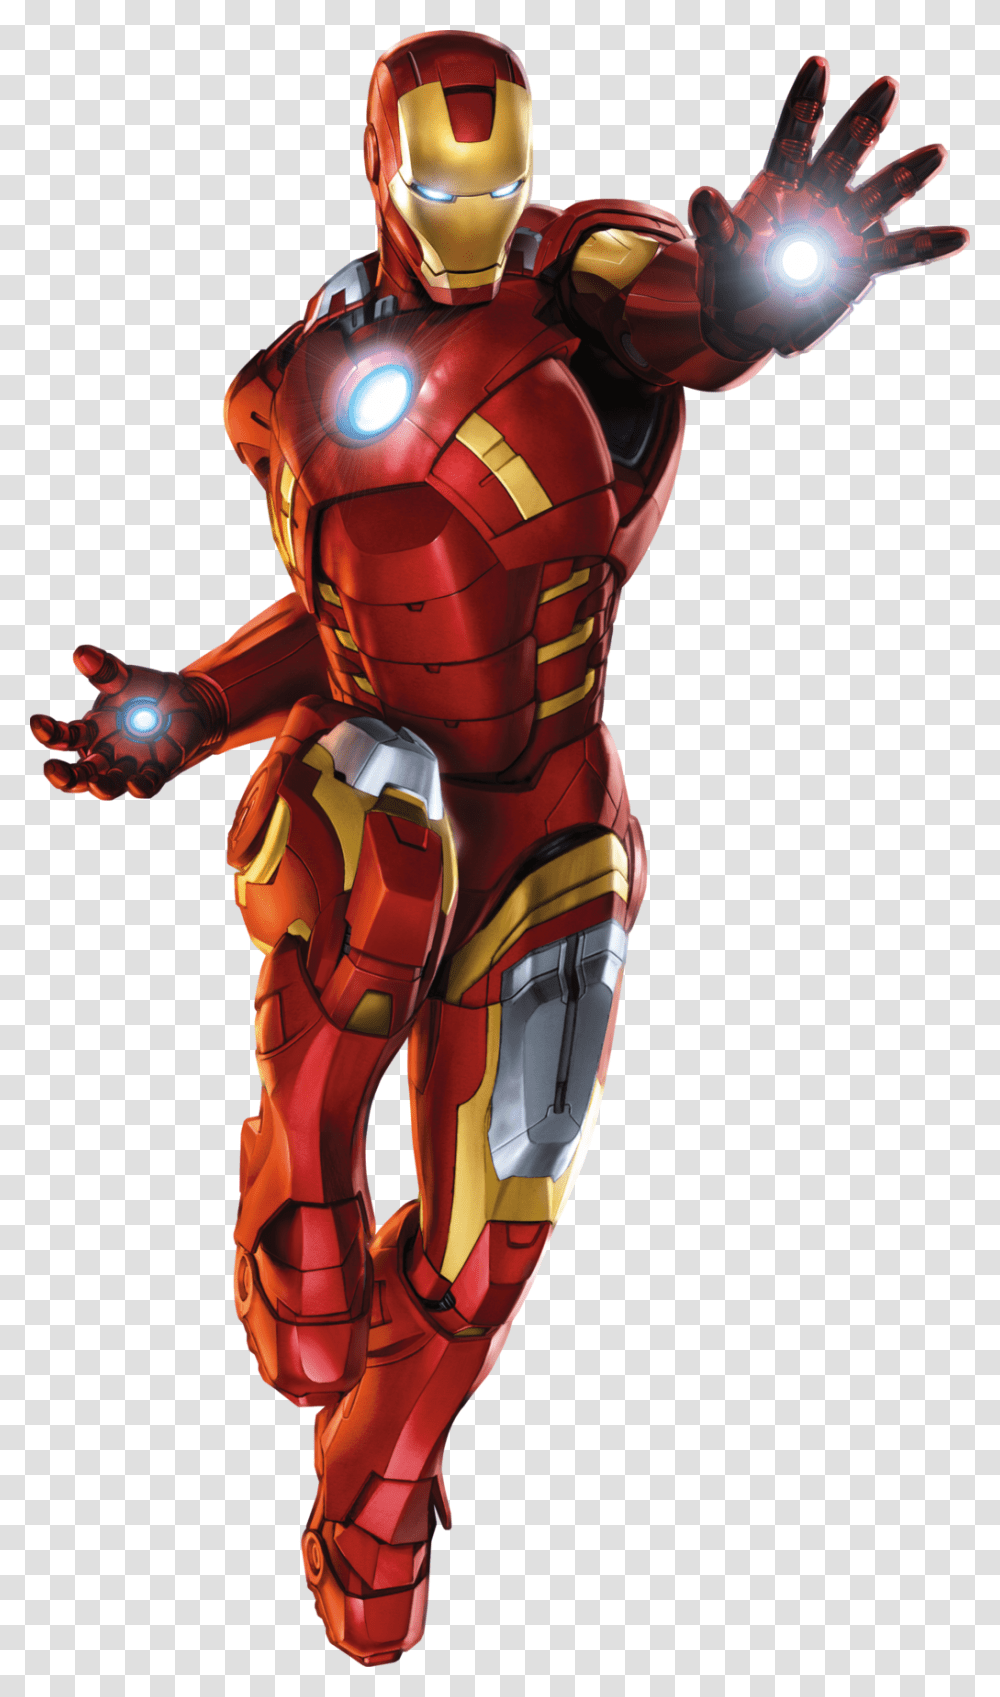 Iron Man Clipart Iron Man Prints, Helmet, Apparel, Robot Transparent Png